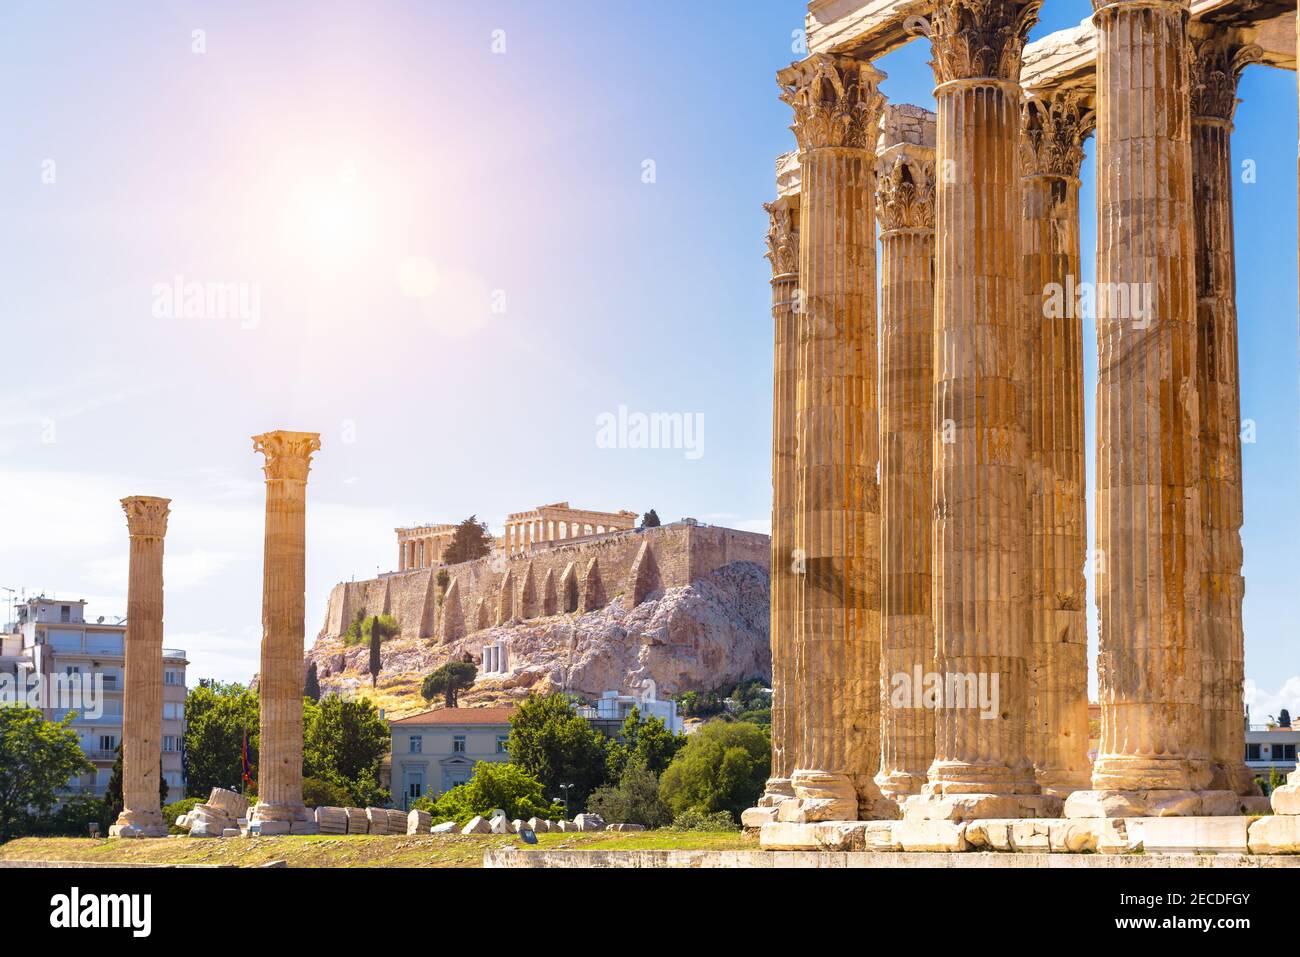 Zeus Tempel mit Blick auf Akropolis, Athen, Griechenland. Dies sind berühmte Wahrzeichen von Athen. Sonnige Aussicht auf antike griechische Ruinen, große Säulen der klassischen Stockfoto